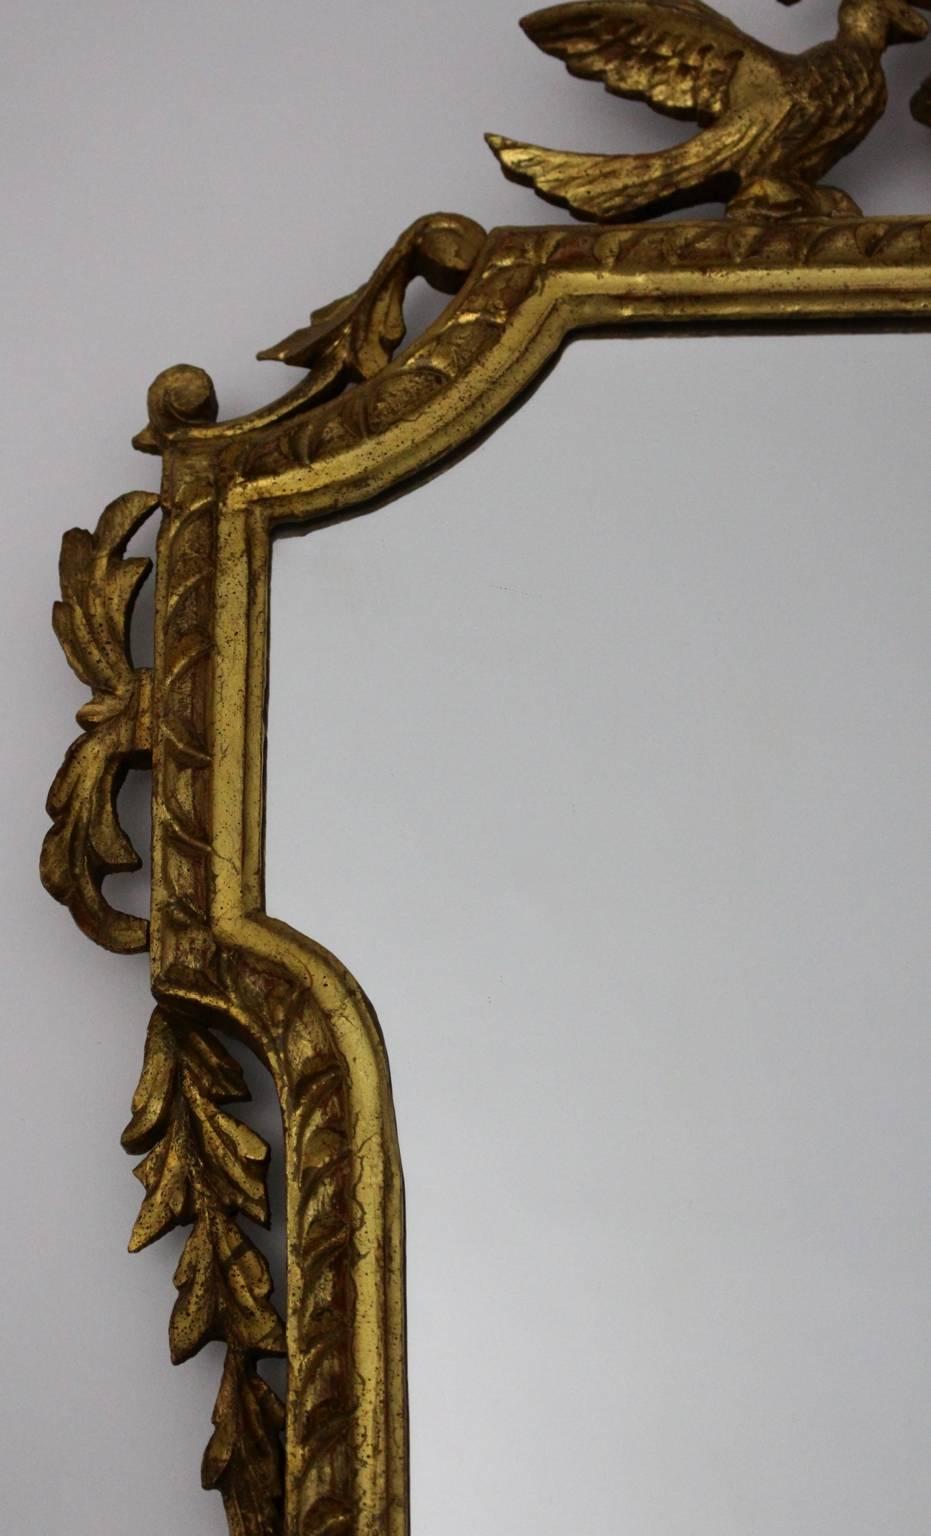 Miroir mural ancien en bois sculpté et doré ou miroir trumeau Autriche circa 1795. 
Le miroir mural vintage / miroir trumeau en bois doré de haute qualité et très décoratif montre des oiseaux et un vase sculptés à la main.
Alors que le miroir mural